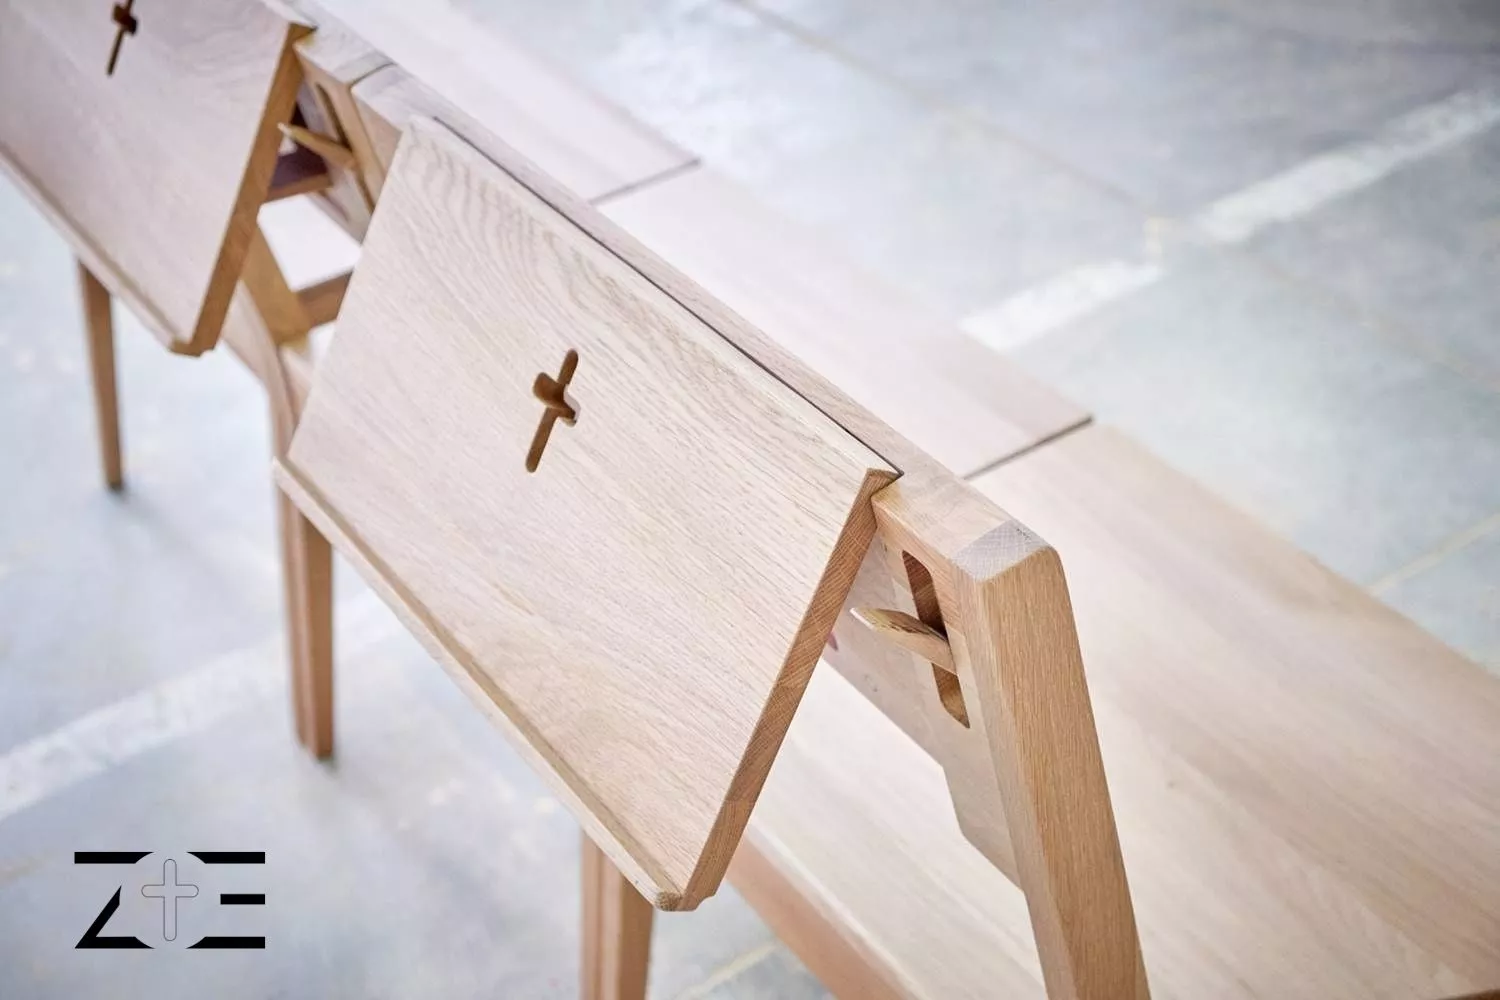 Crkvene stolice ZOE povezane magnetima u jednu klupu s logom u donjem lijevom kutu fotografije